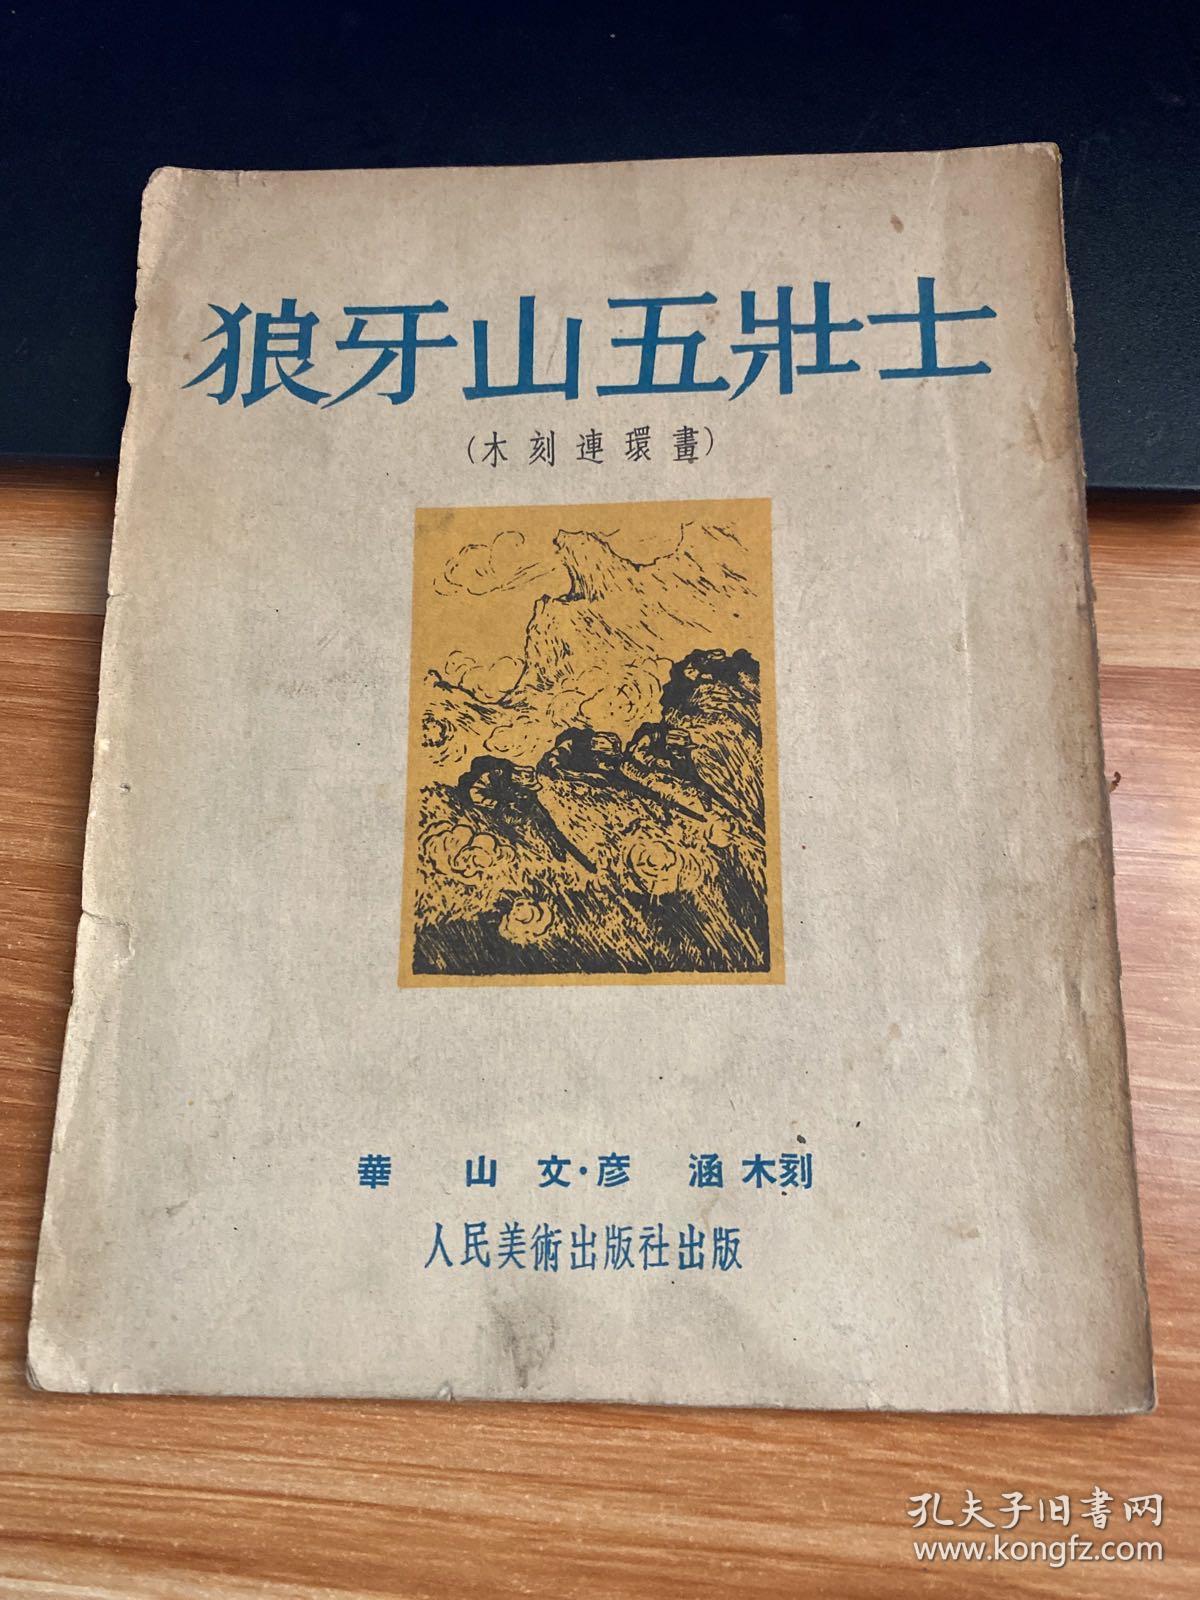 狼牙山五壮士【木刻连环画】1951年初版